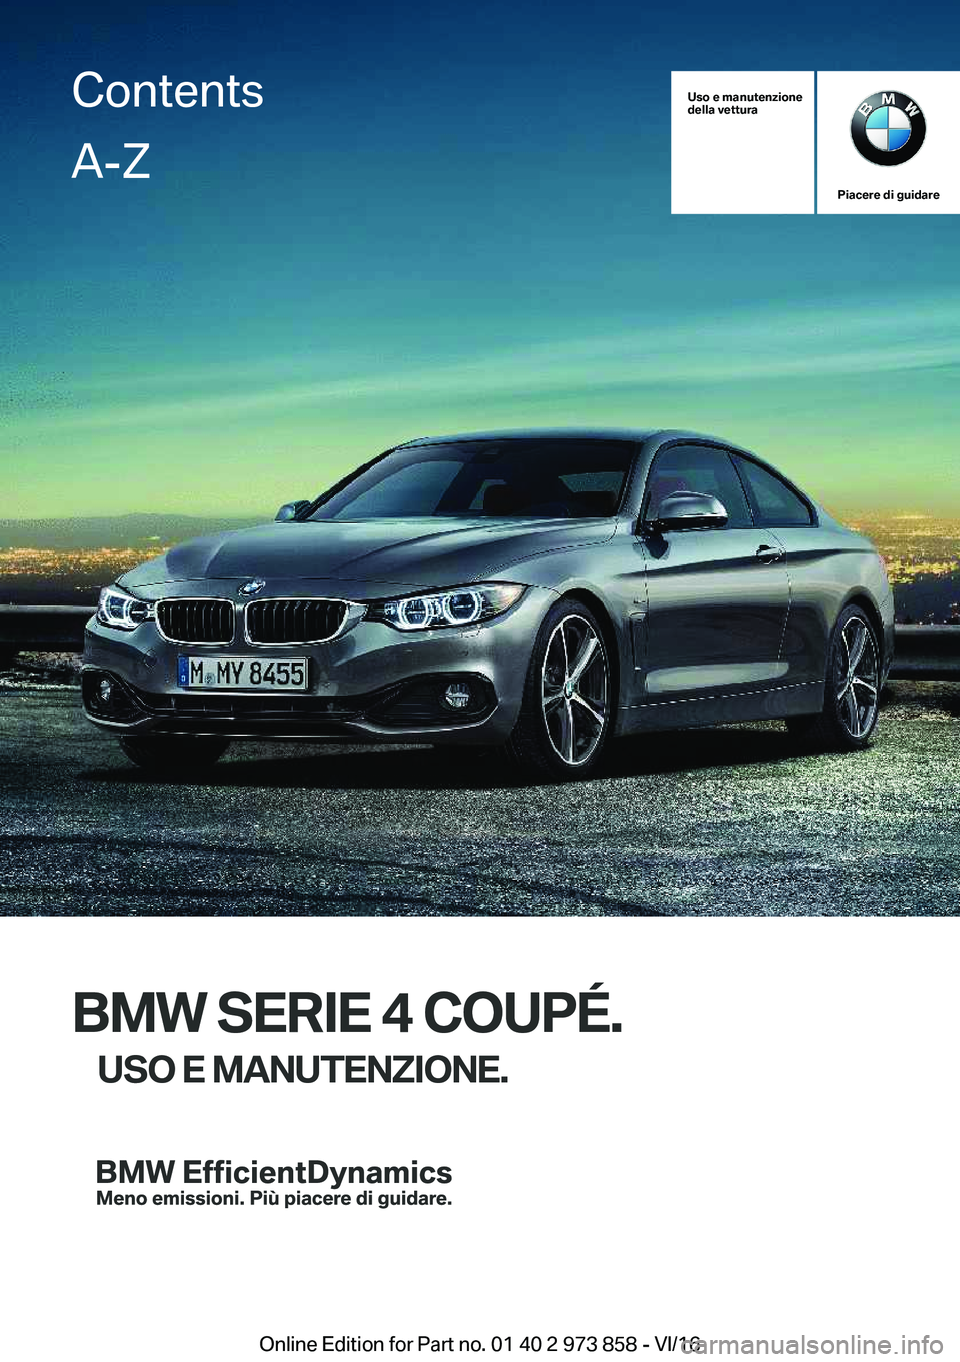 BMW 4 SERIES COUPE 2017  Libretti Di Uso E manutenzione (in Italian) �U�s�o��e��m�a�n�u�t�e�n�z�i�o�n�e
�d�e�l�l�a��v�e�t�t�u�r�a
�P�i�a�c�e�r�e��d�i��g�u�i�d�a�r�e
�B�M�W��S�E�R�I�E��4��C�O�U�P�